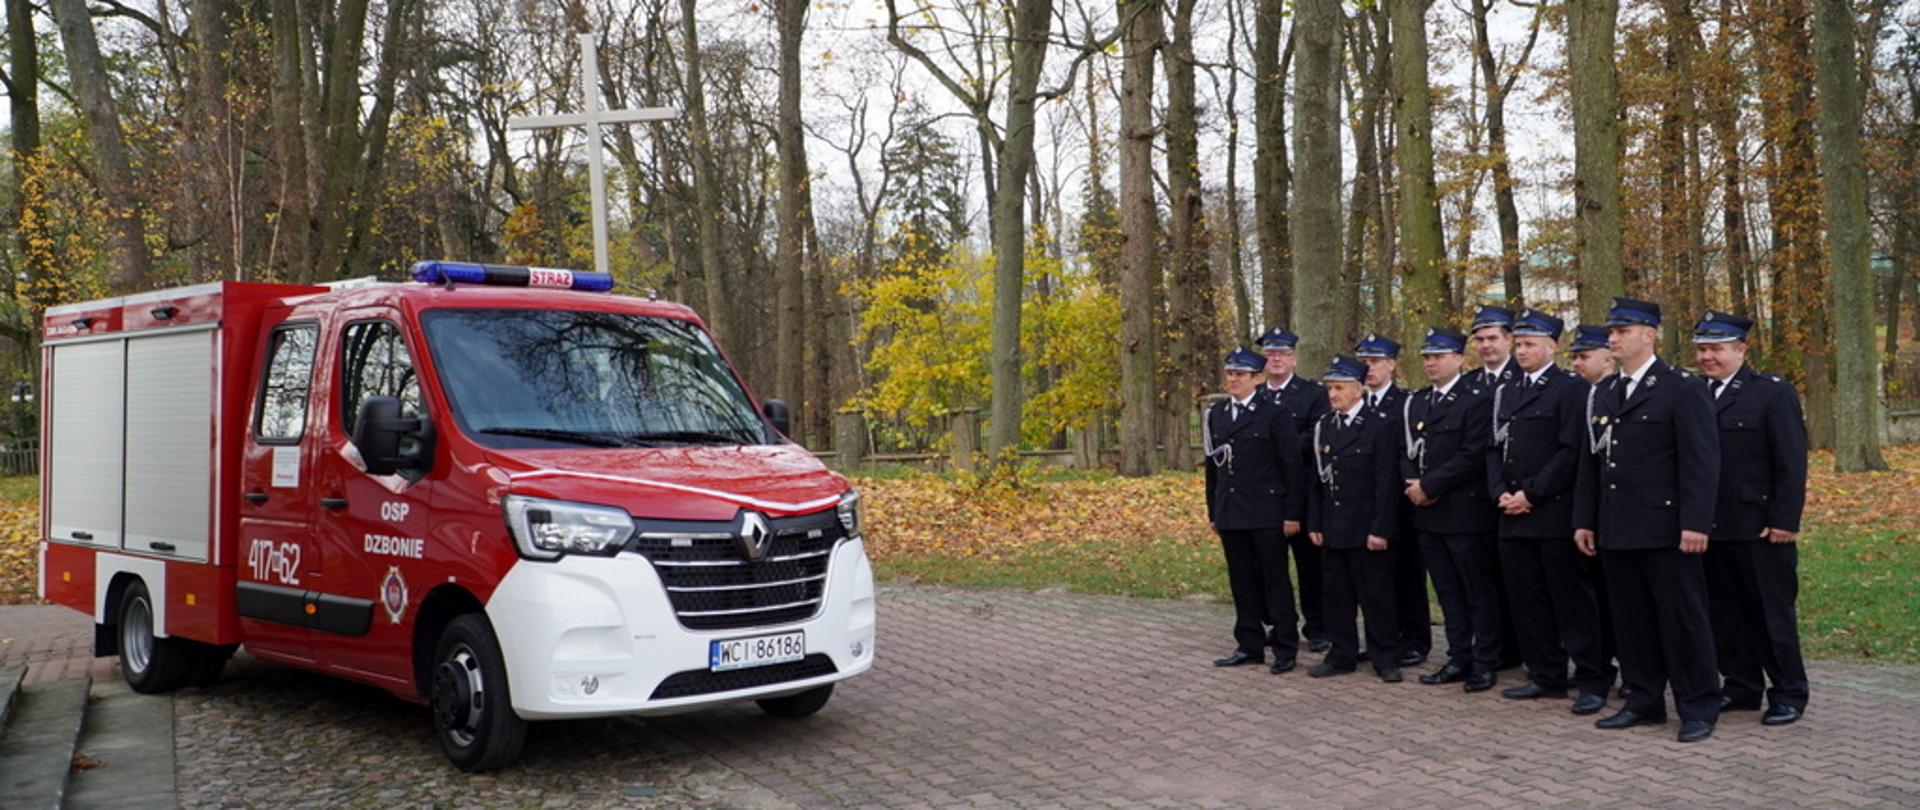 Nowy samochód ratowniczo-gaśniczy Renault Master oraz strażacy OSP Dzbonie stojący w szeregu. 